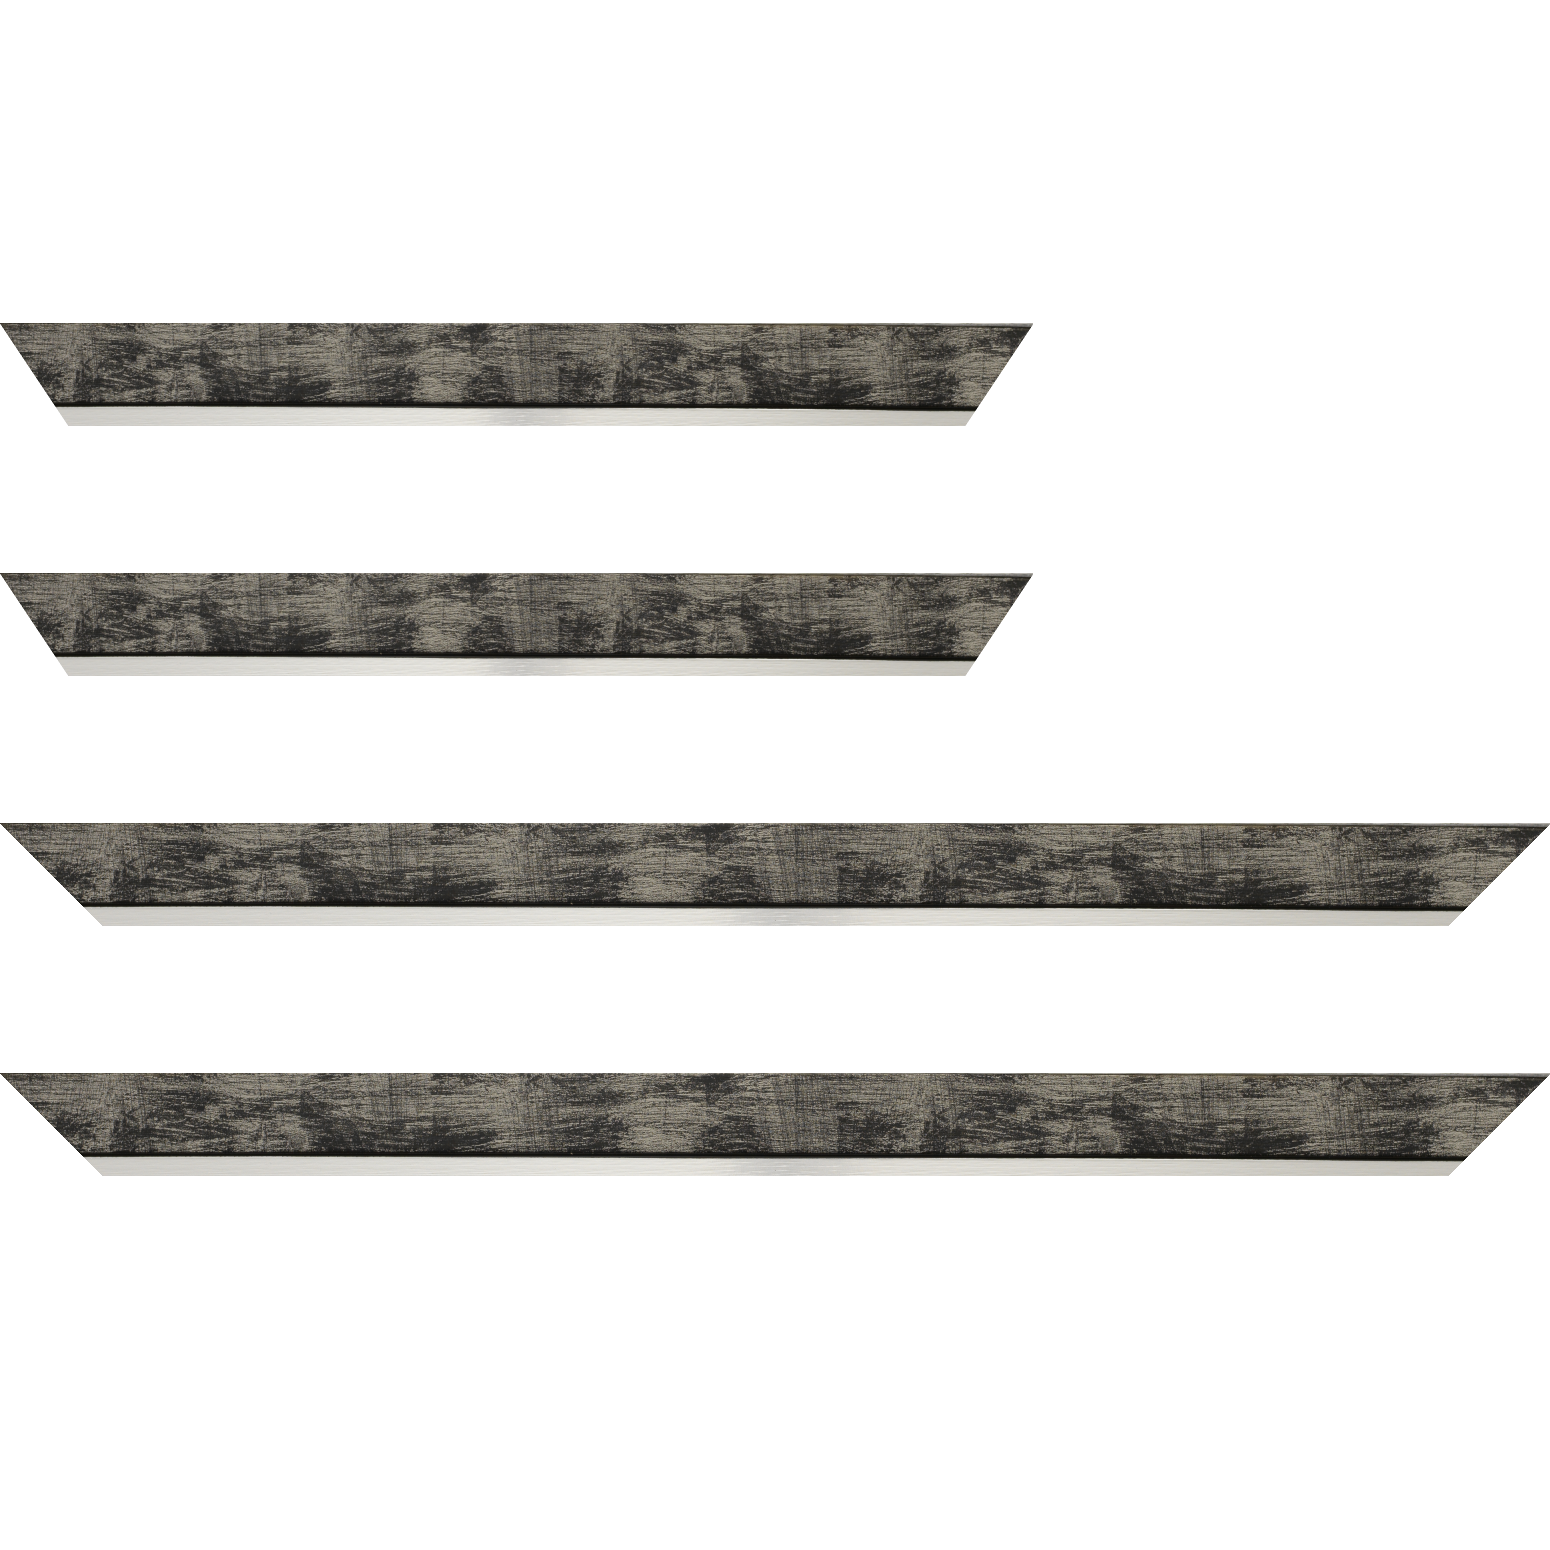 Baguette bois profil plat largeur 3.3cm couleur noir fond argent filet argent - 24x30